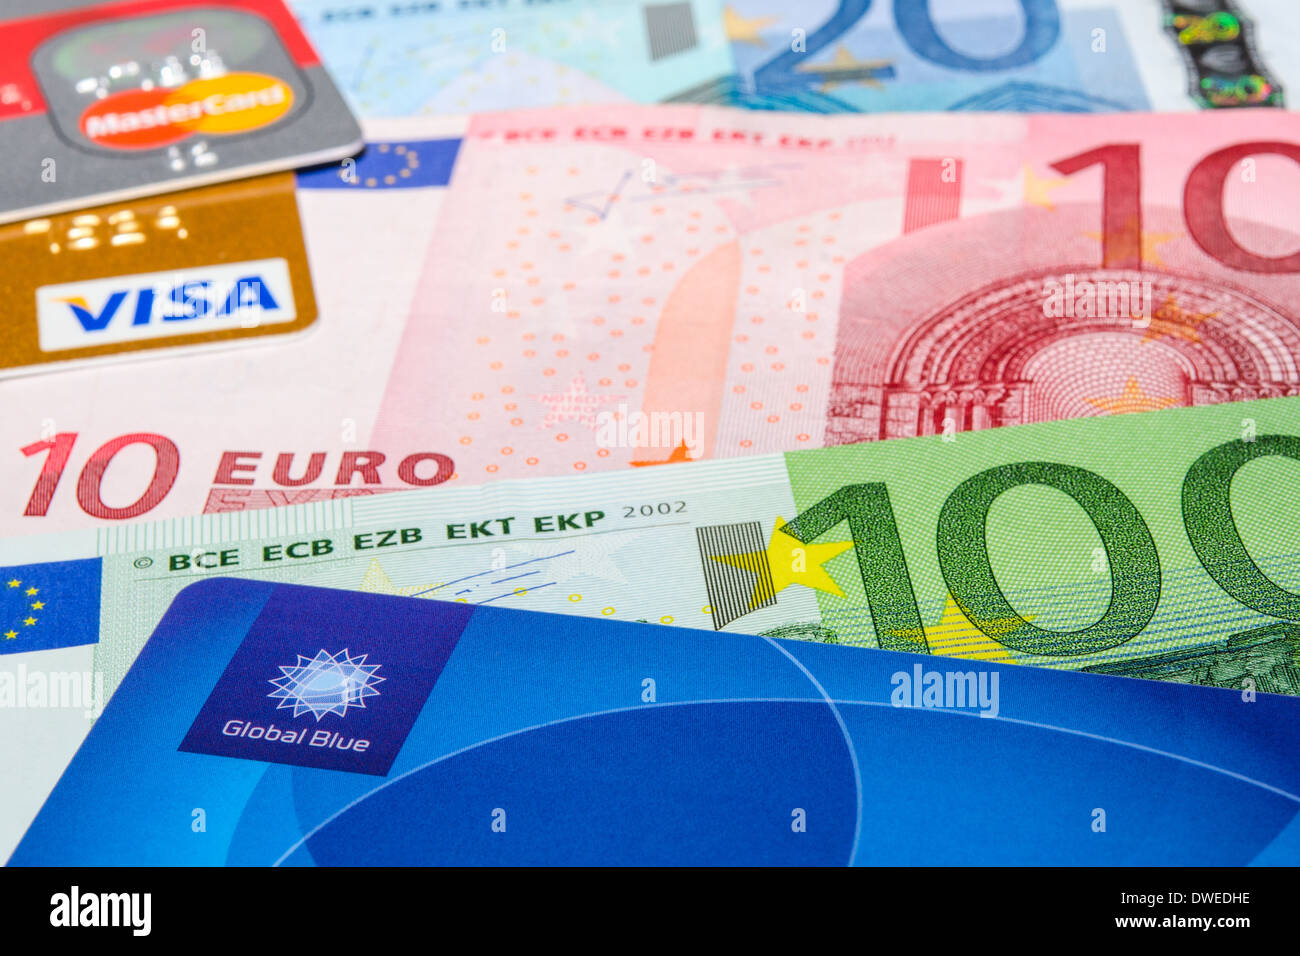 München, Deutschland - 23. Februar 2014: Global Blue, Visa und MasterCard Kreditkarten auf Euro-Banknoten Stockfoto